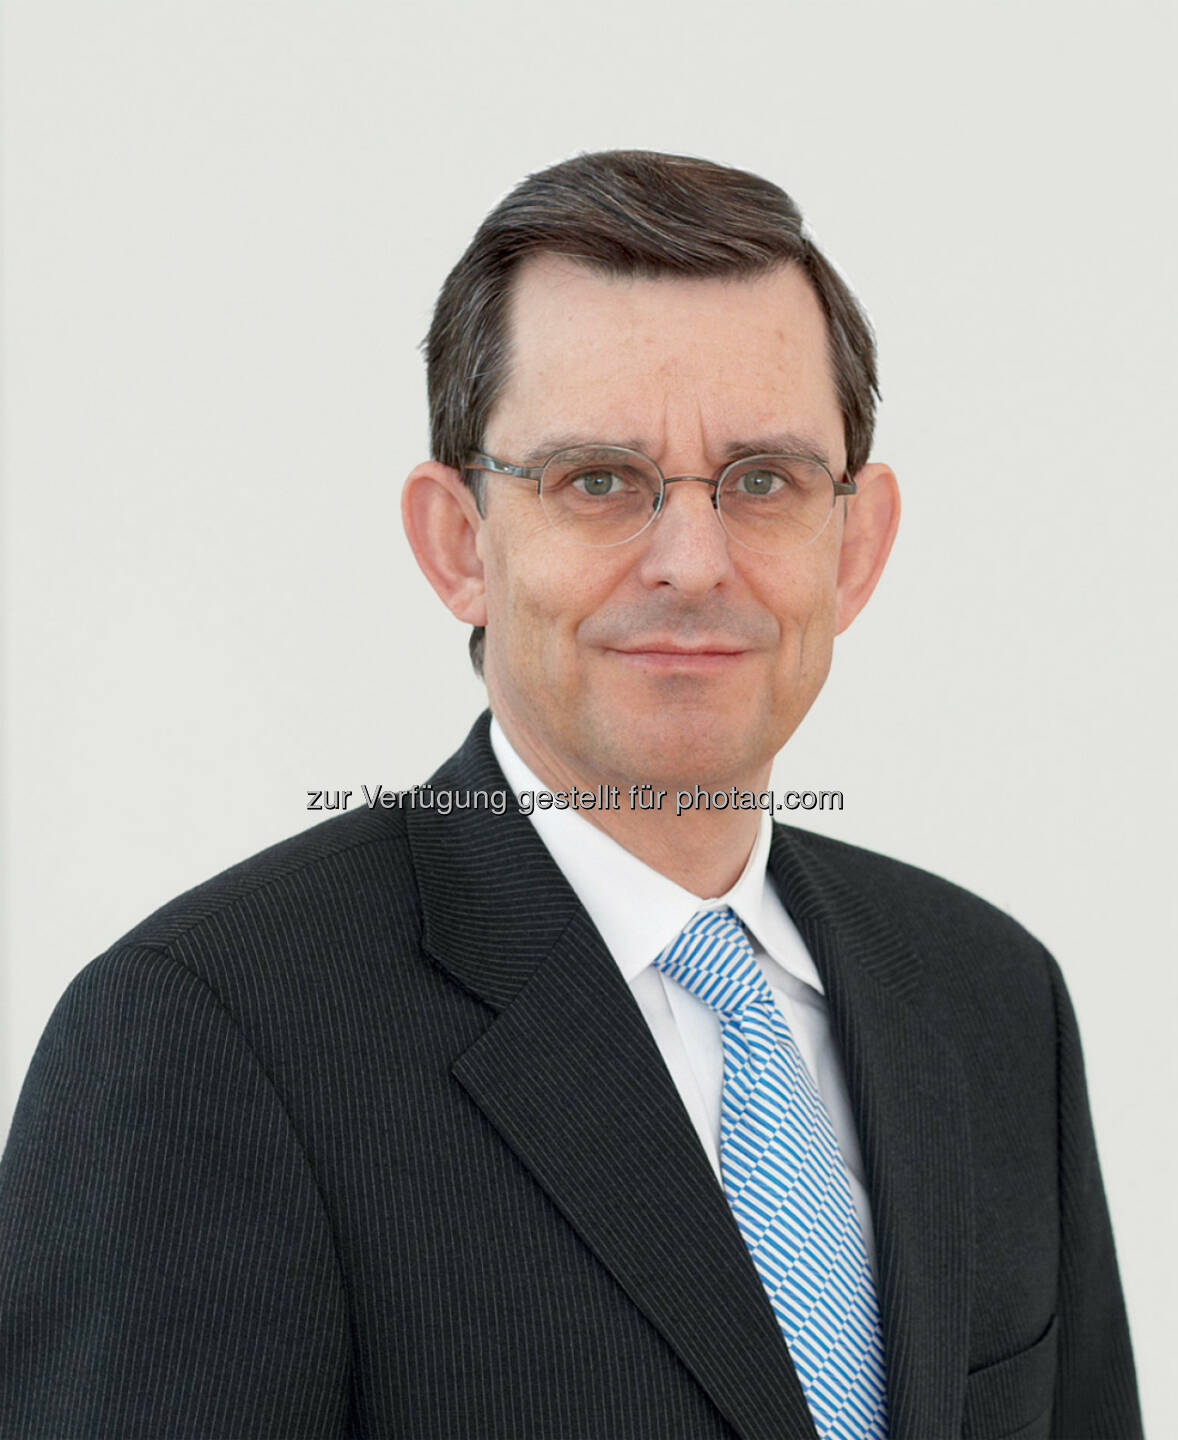 Stefan Schnittmann, Mitglied des Vorstands, Commerzbank AG